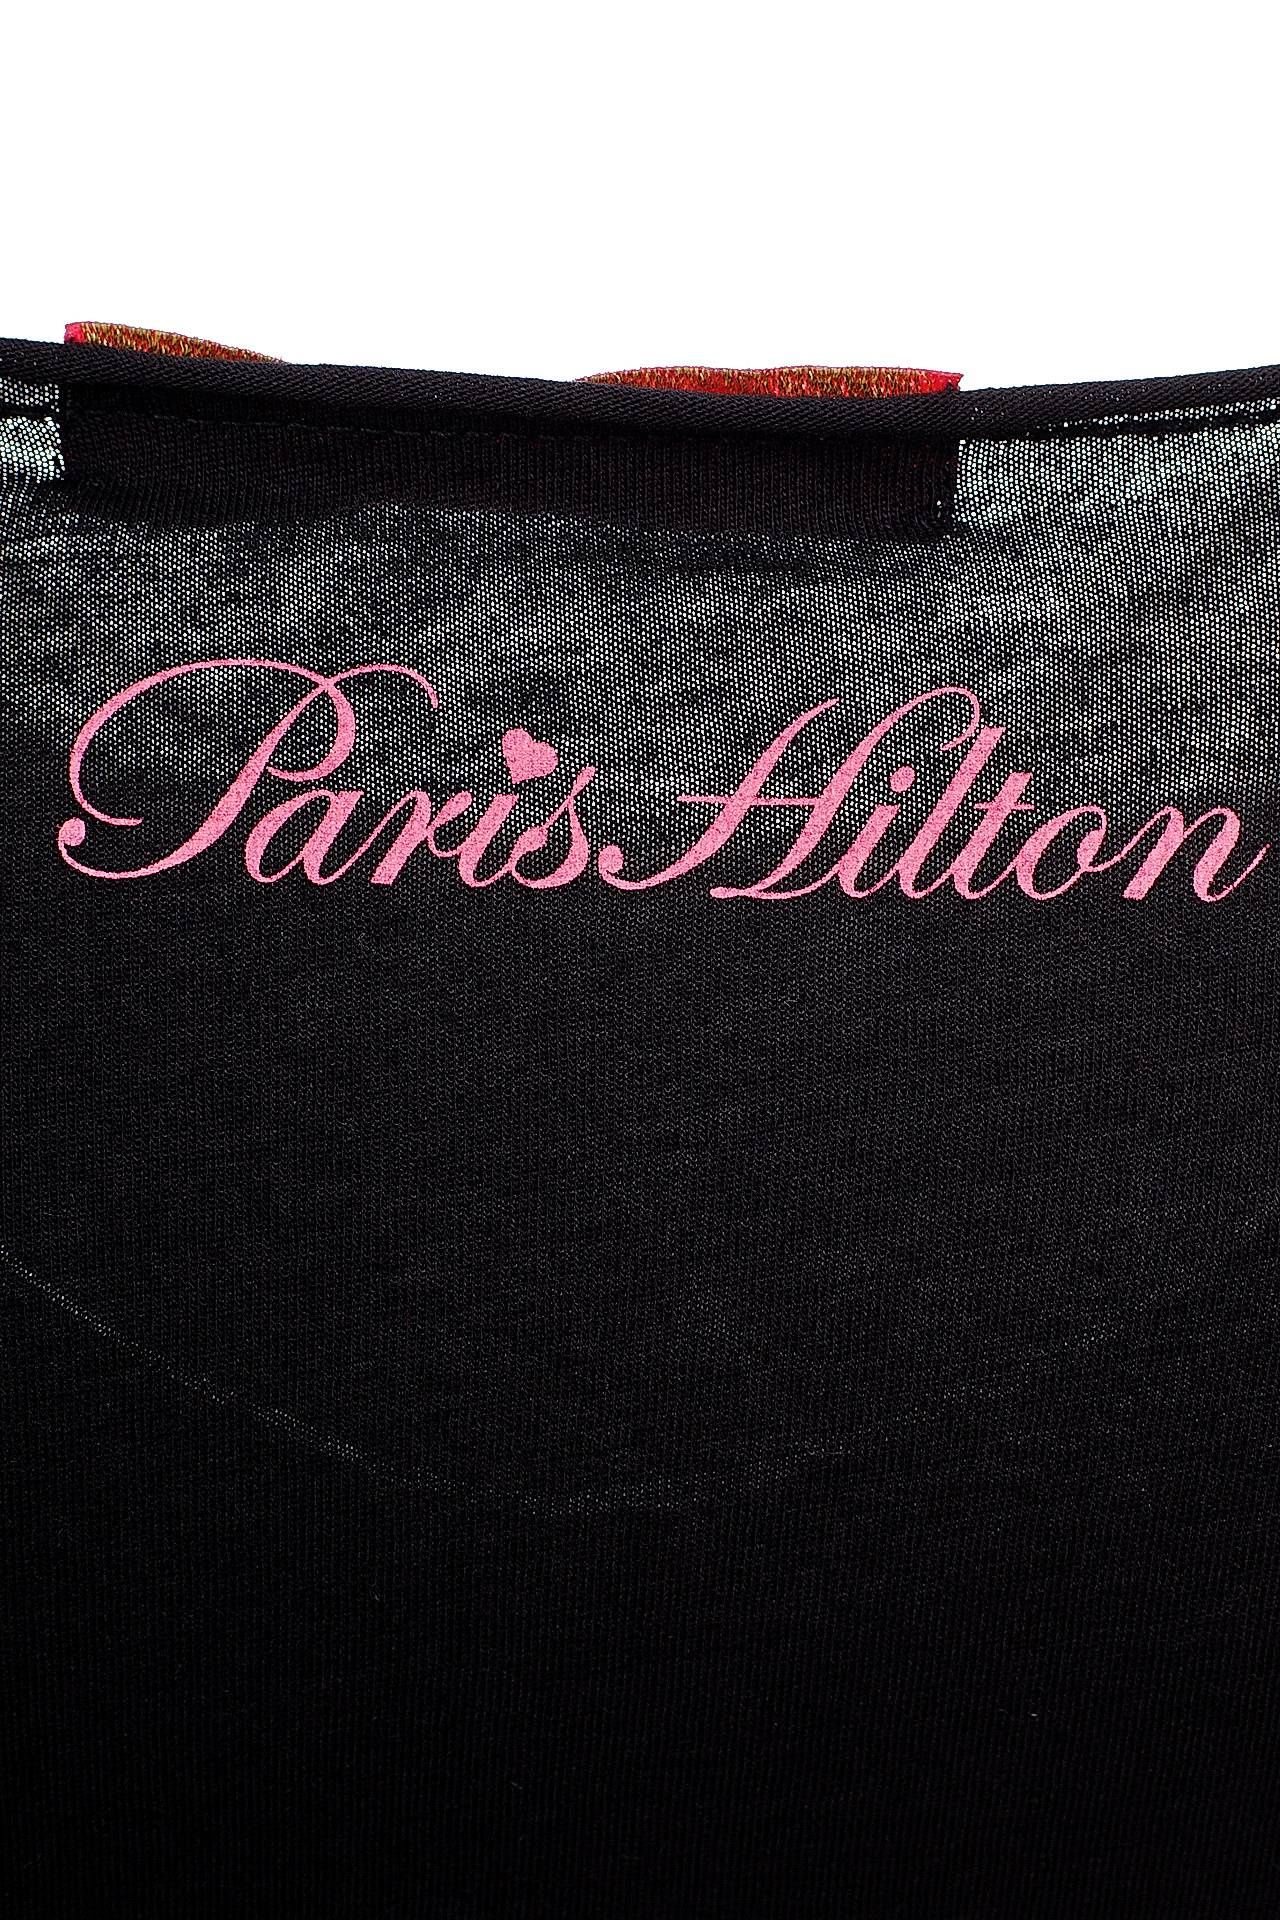  PARIS HILTON,  23,5, 42 